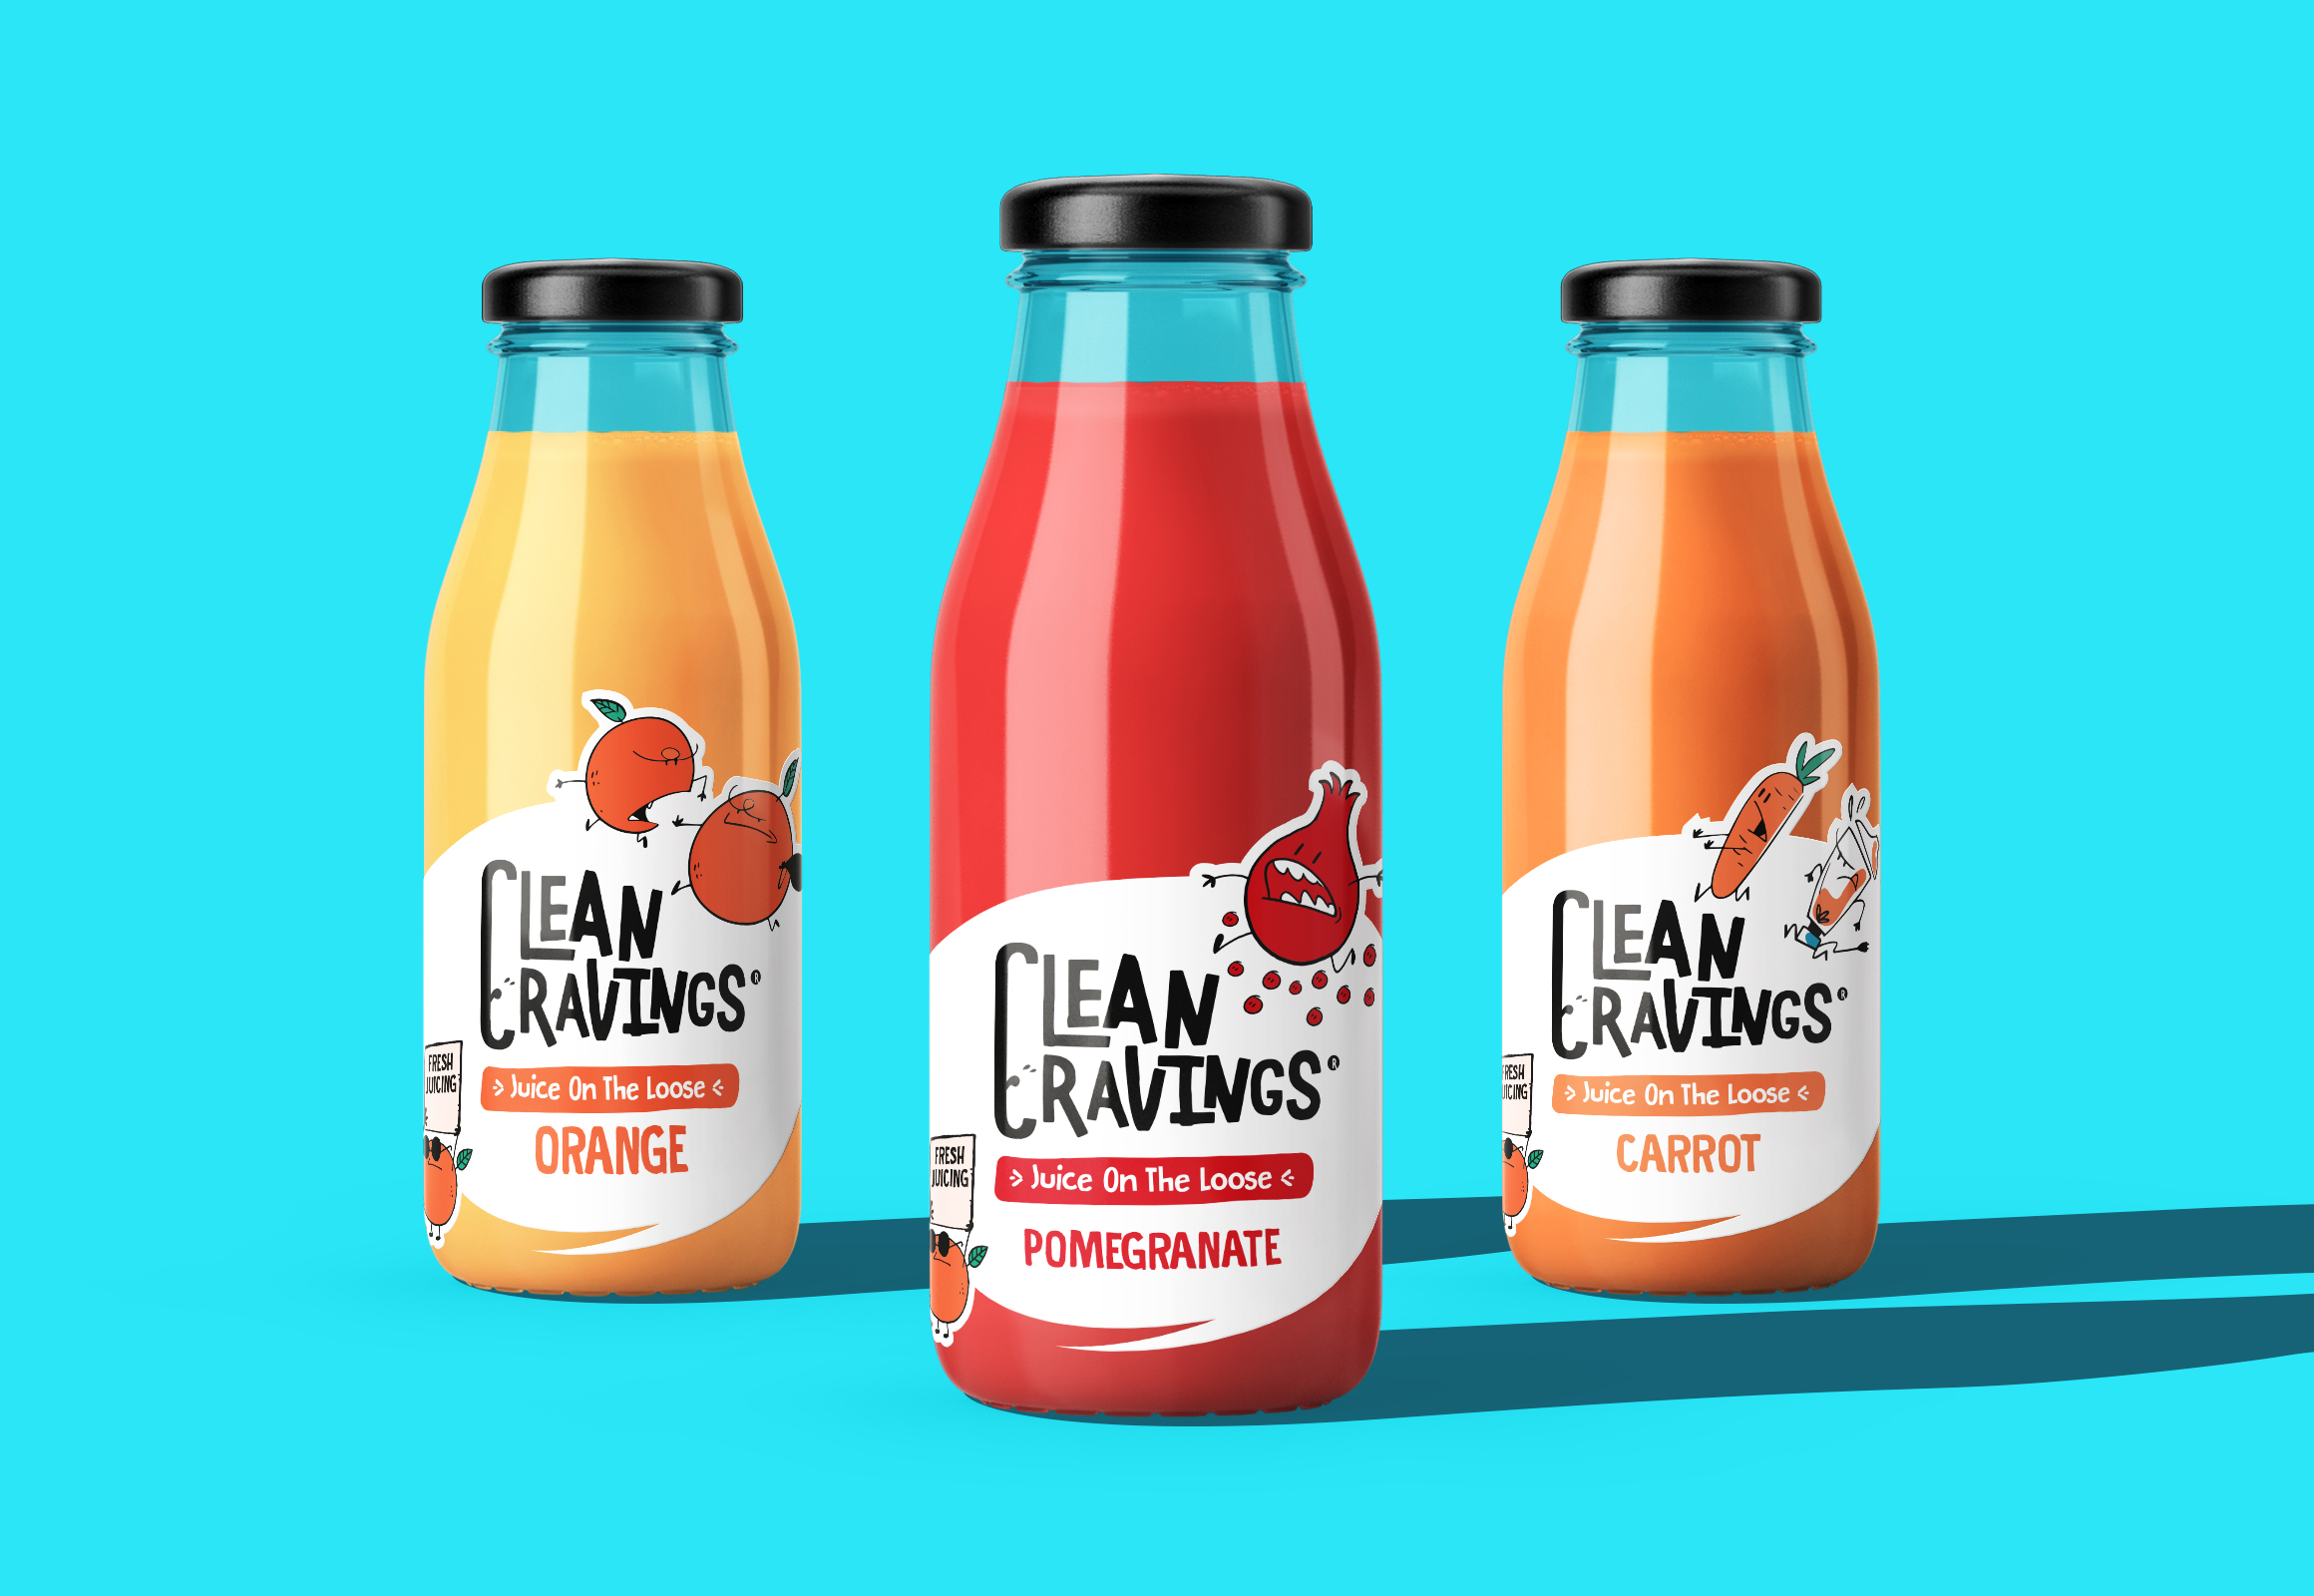 Clean Cravings果汁包装设计